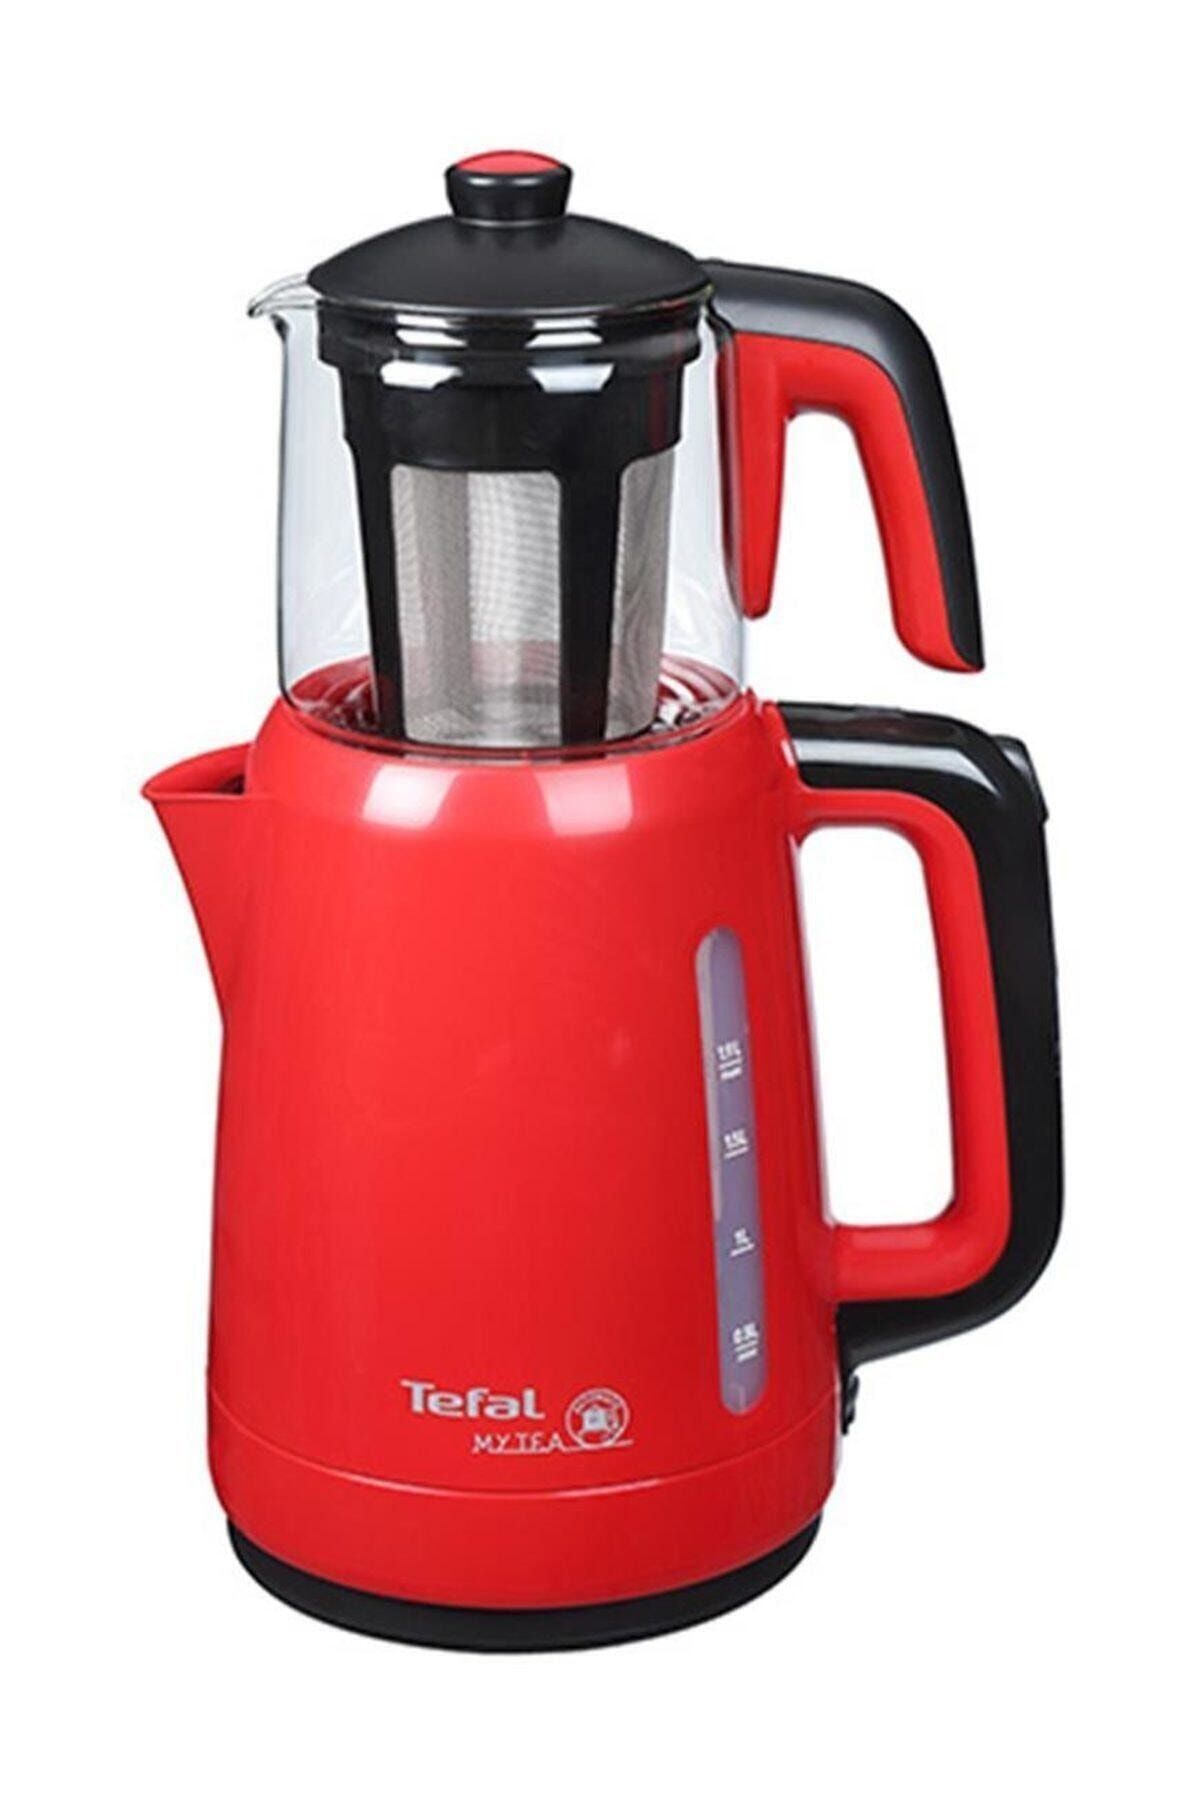 TEFAL My Tea Çay Makinesi Yeni Kırmızı 1500637711